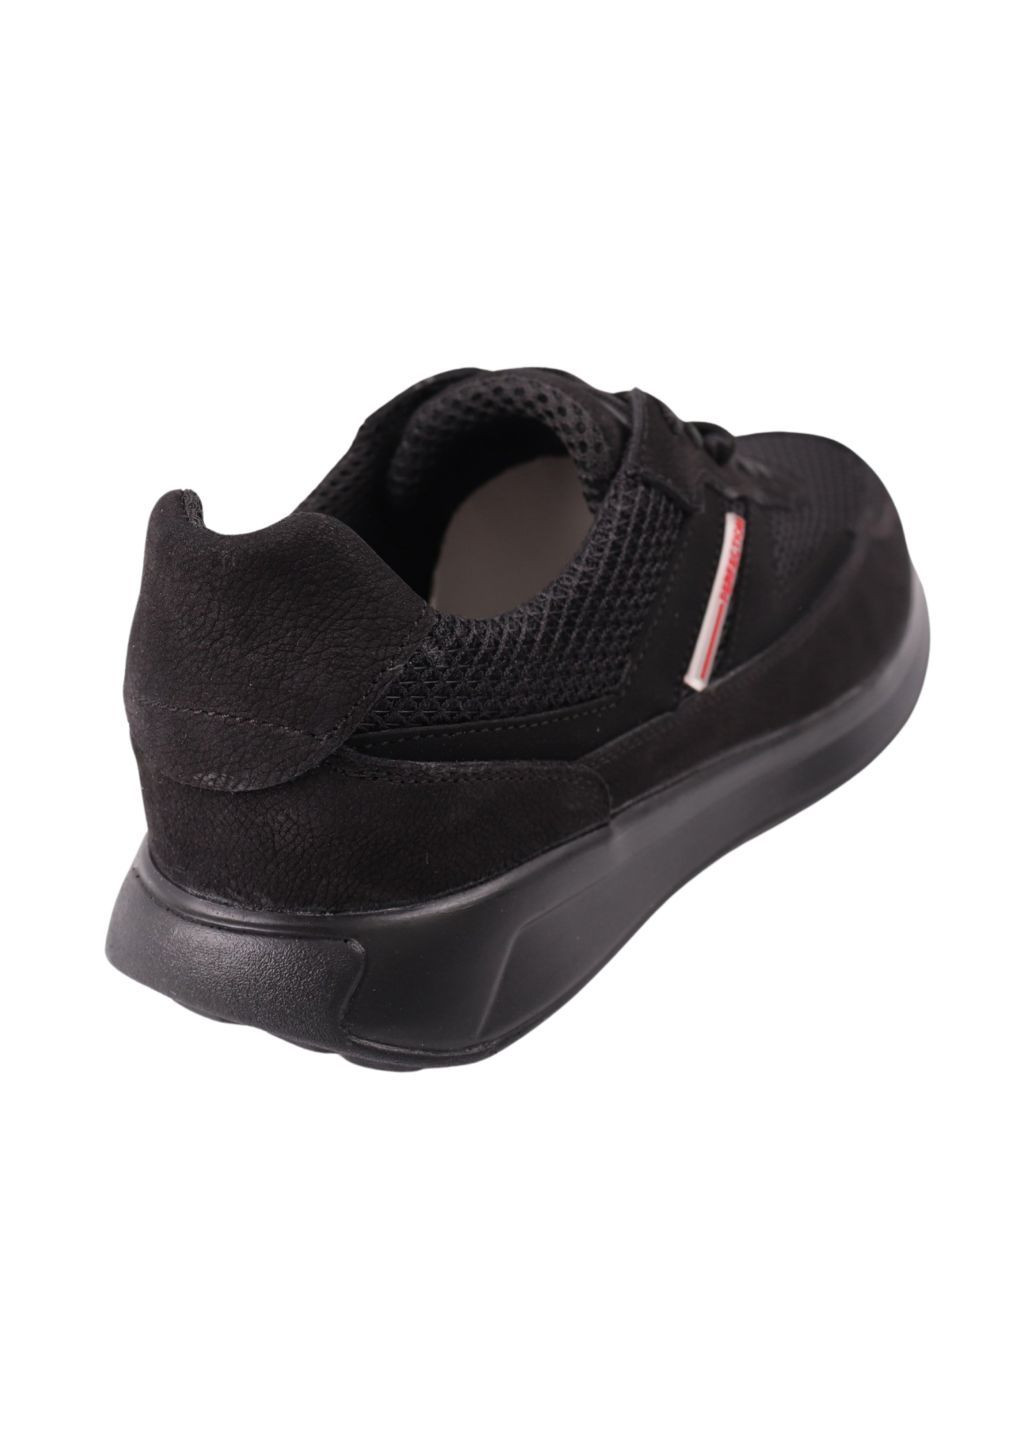 Черные кроссовки мужские черные текстиль Brave 269-24DTS